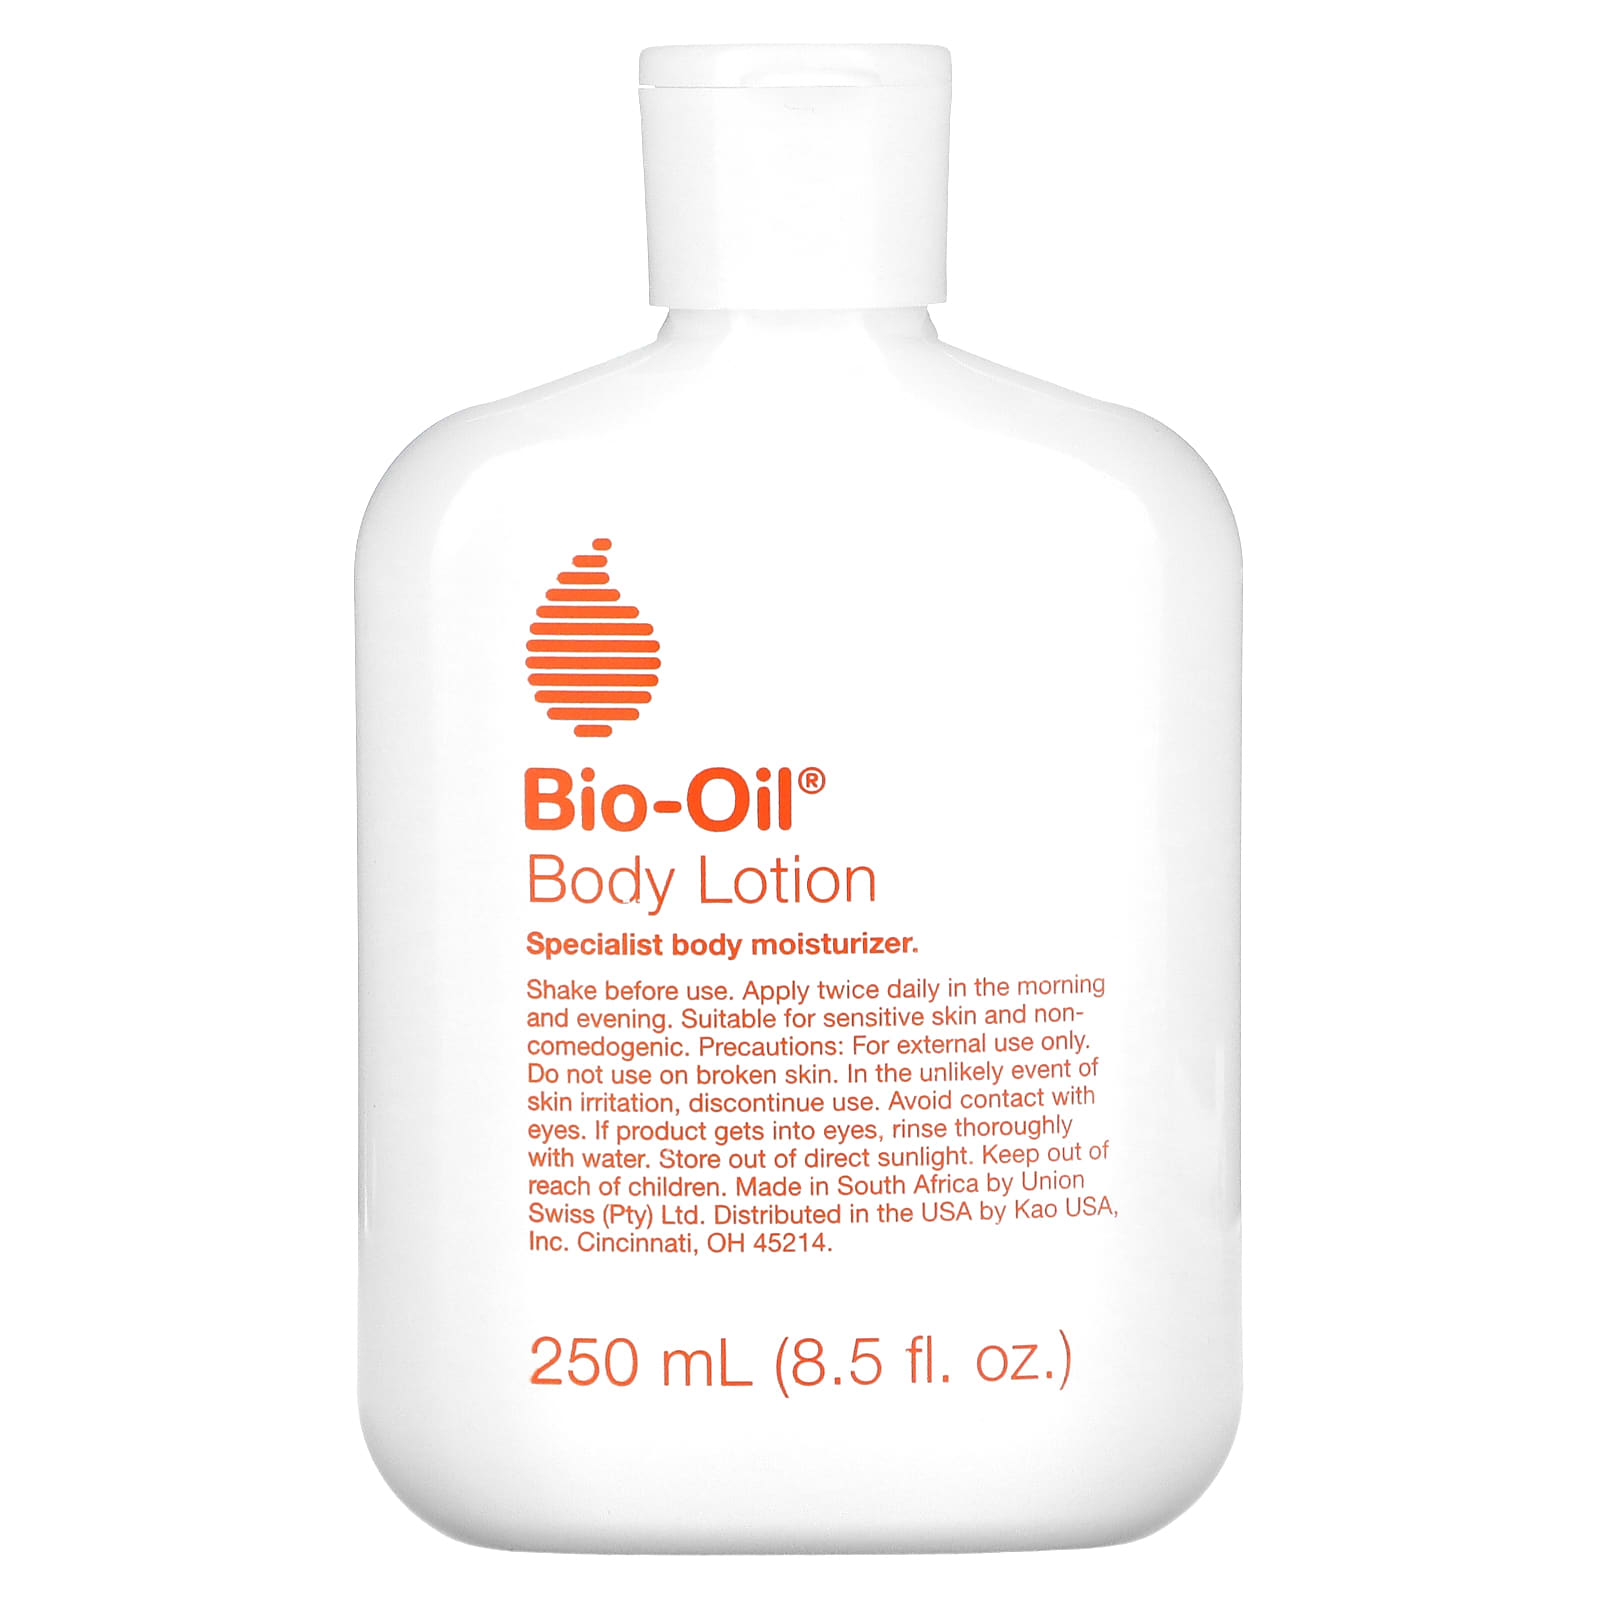 Bio-Oil, Body Lotion, Specialist Body Moisturizer, 8.5 fl (250